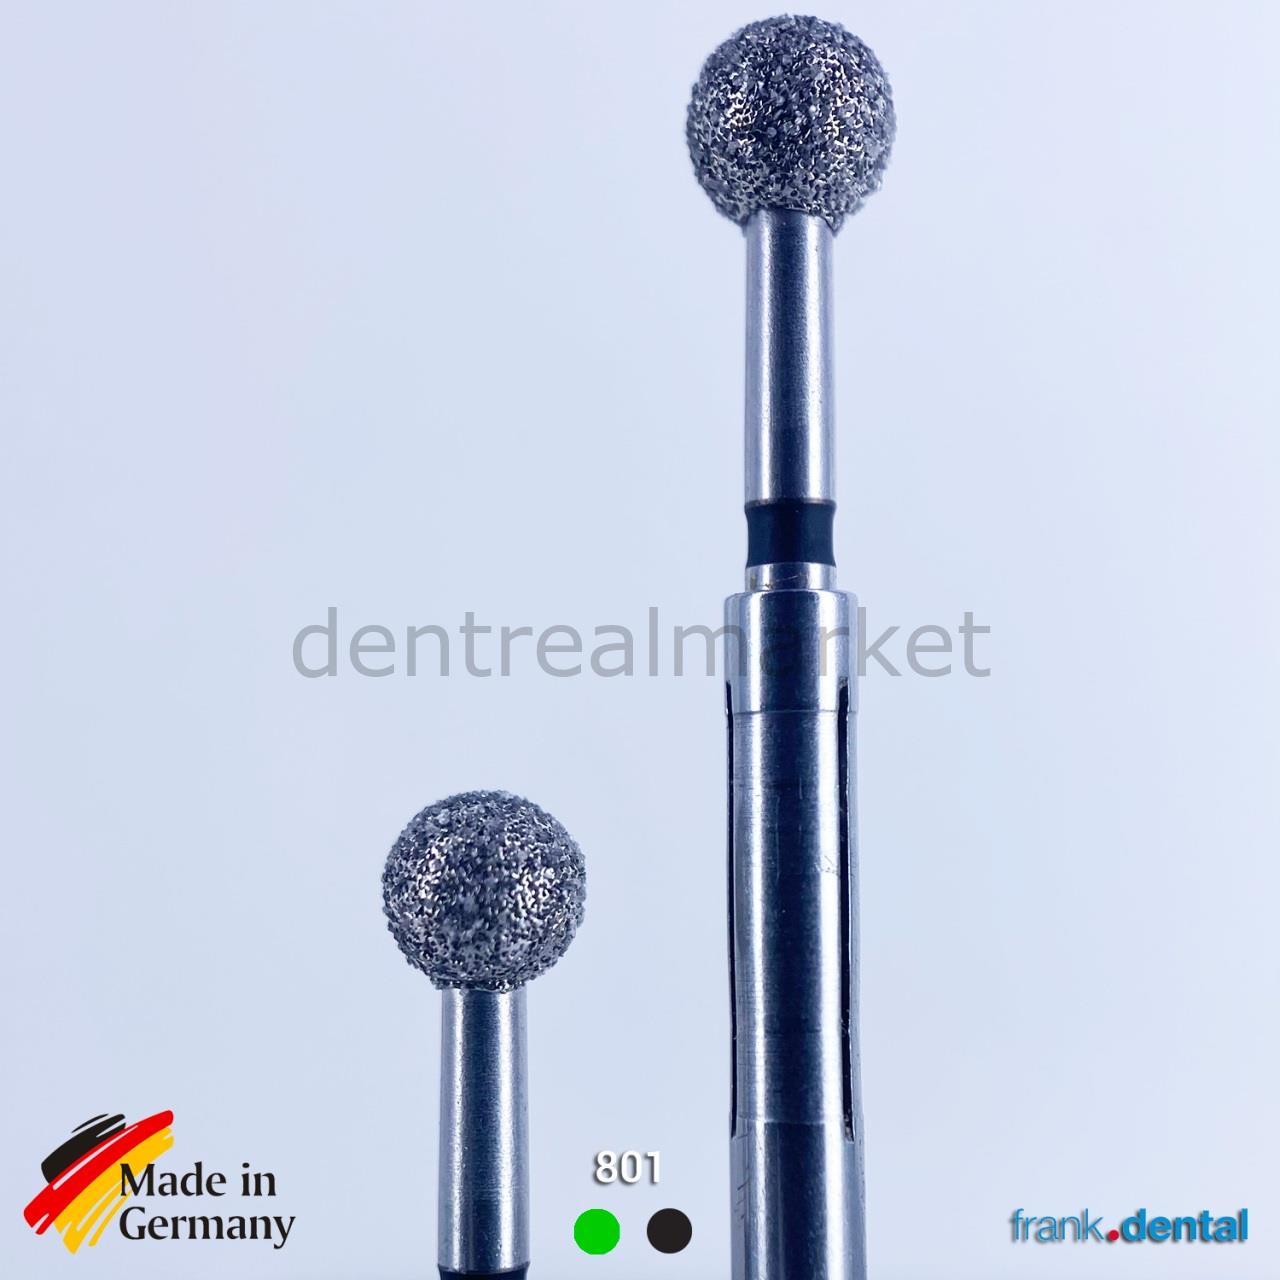 DentrealStore - Frank Dental Diamond Surgical Bur for Sinus - 801 For Contra-Angle 1 Pcs